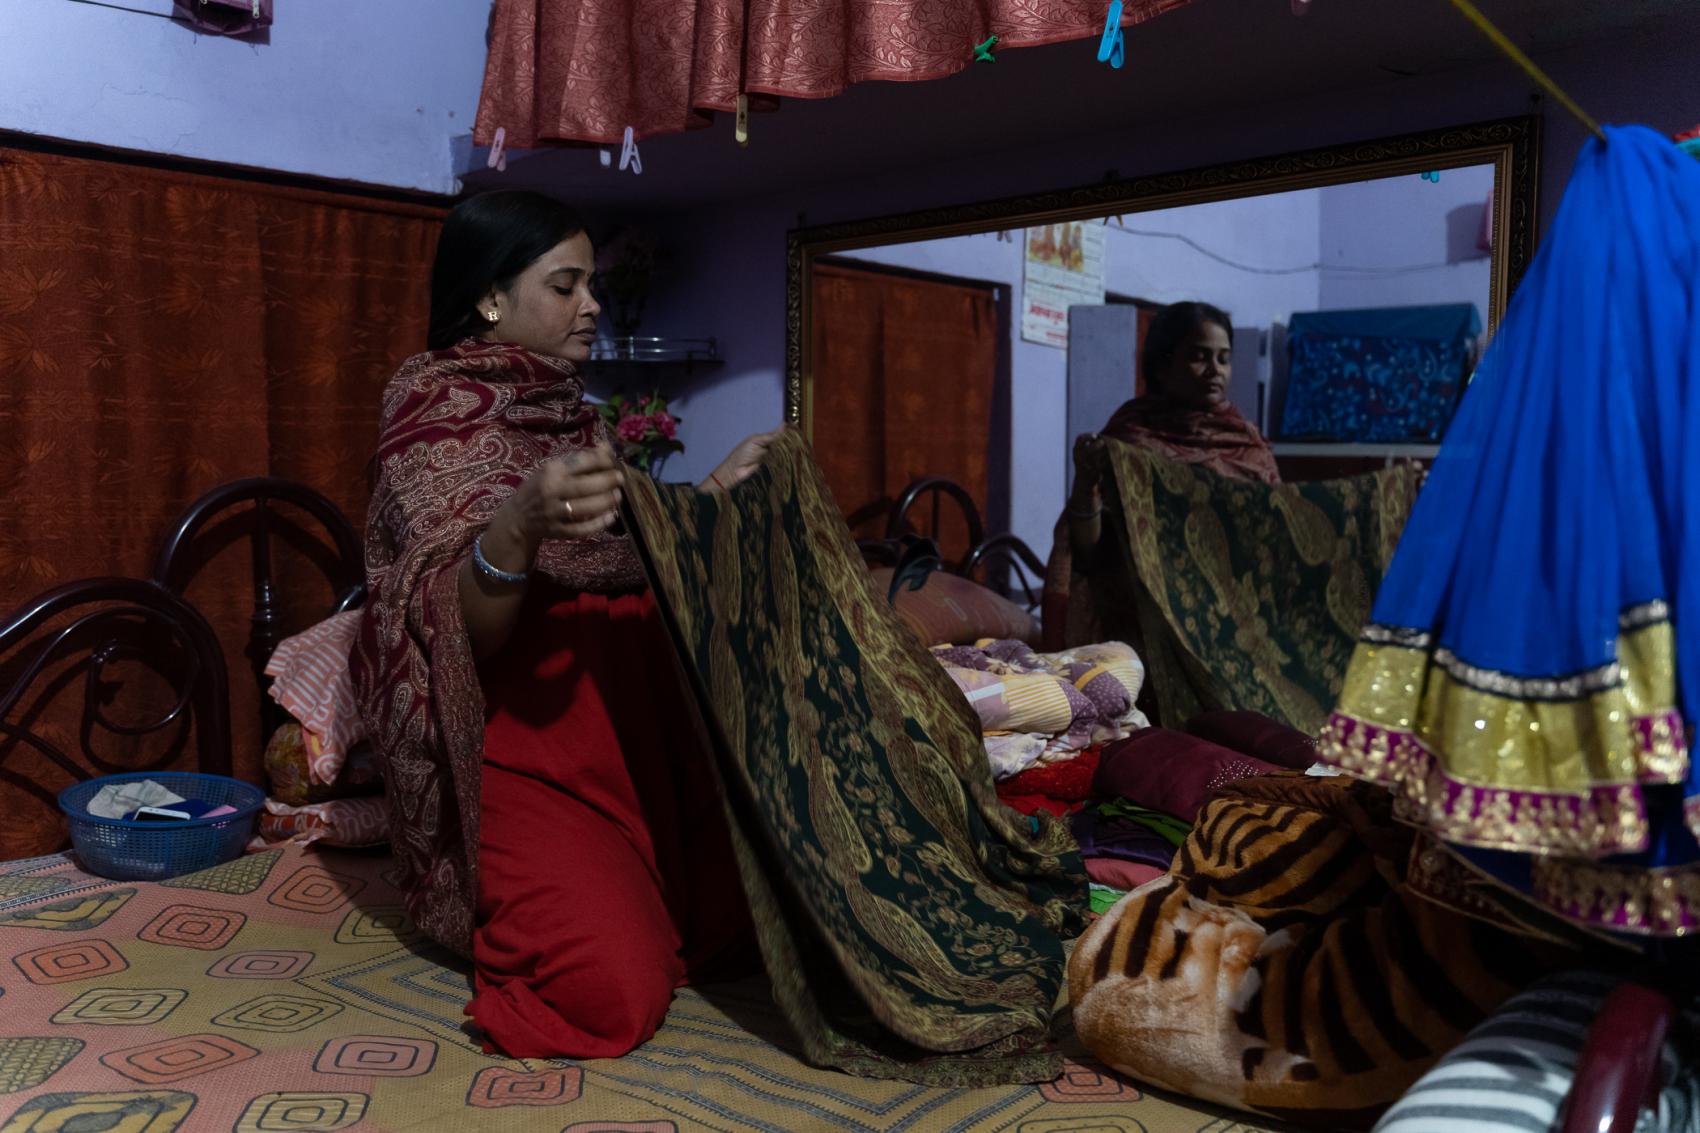 Prostituee in Sonagatchi, Calcutta, India © Jan De Deken